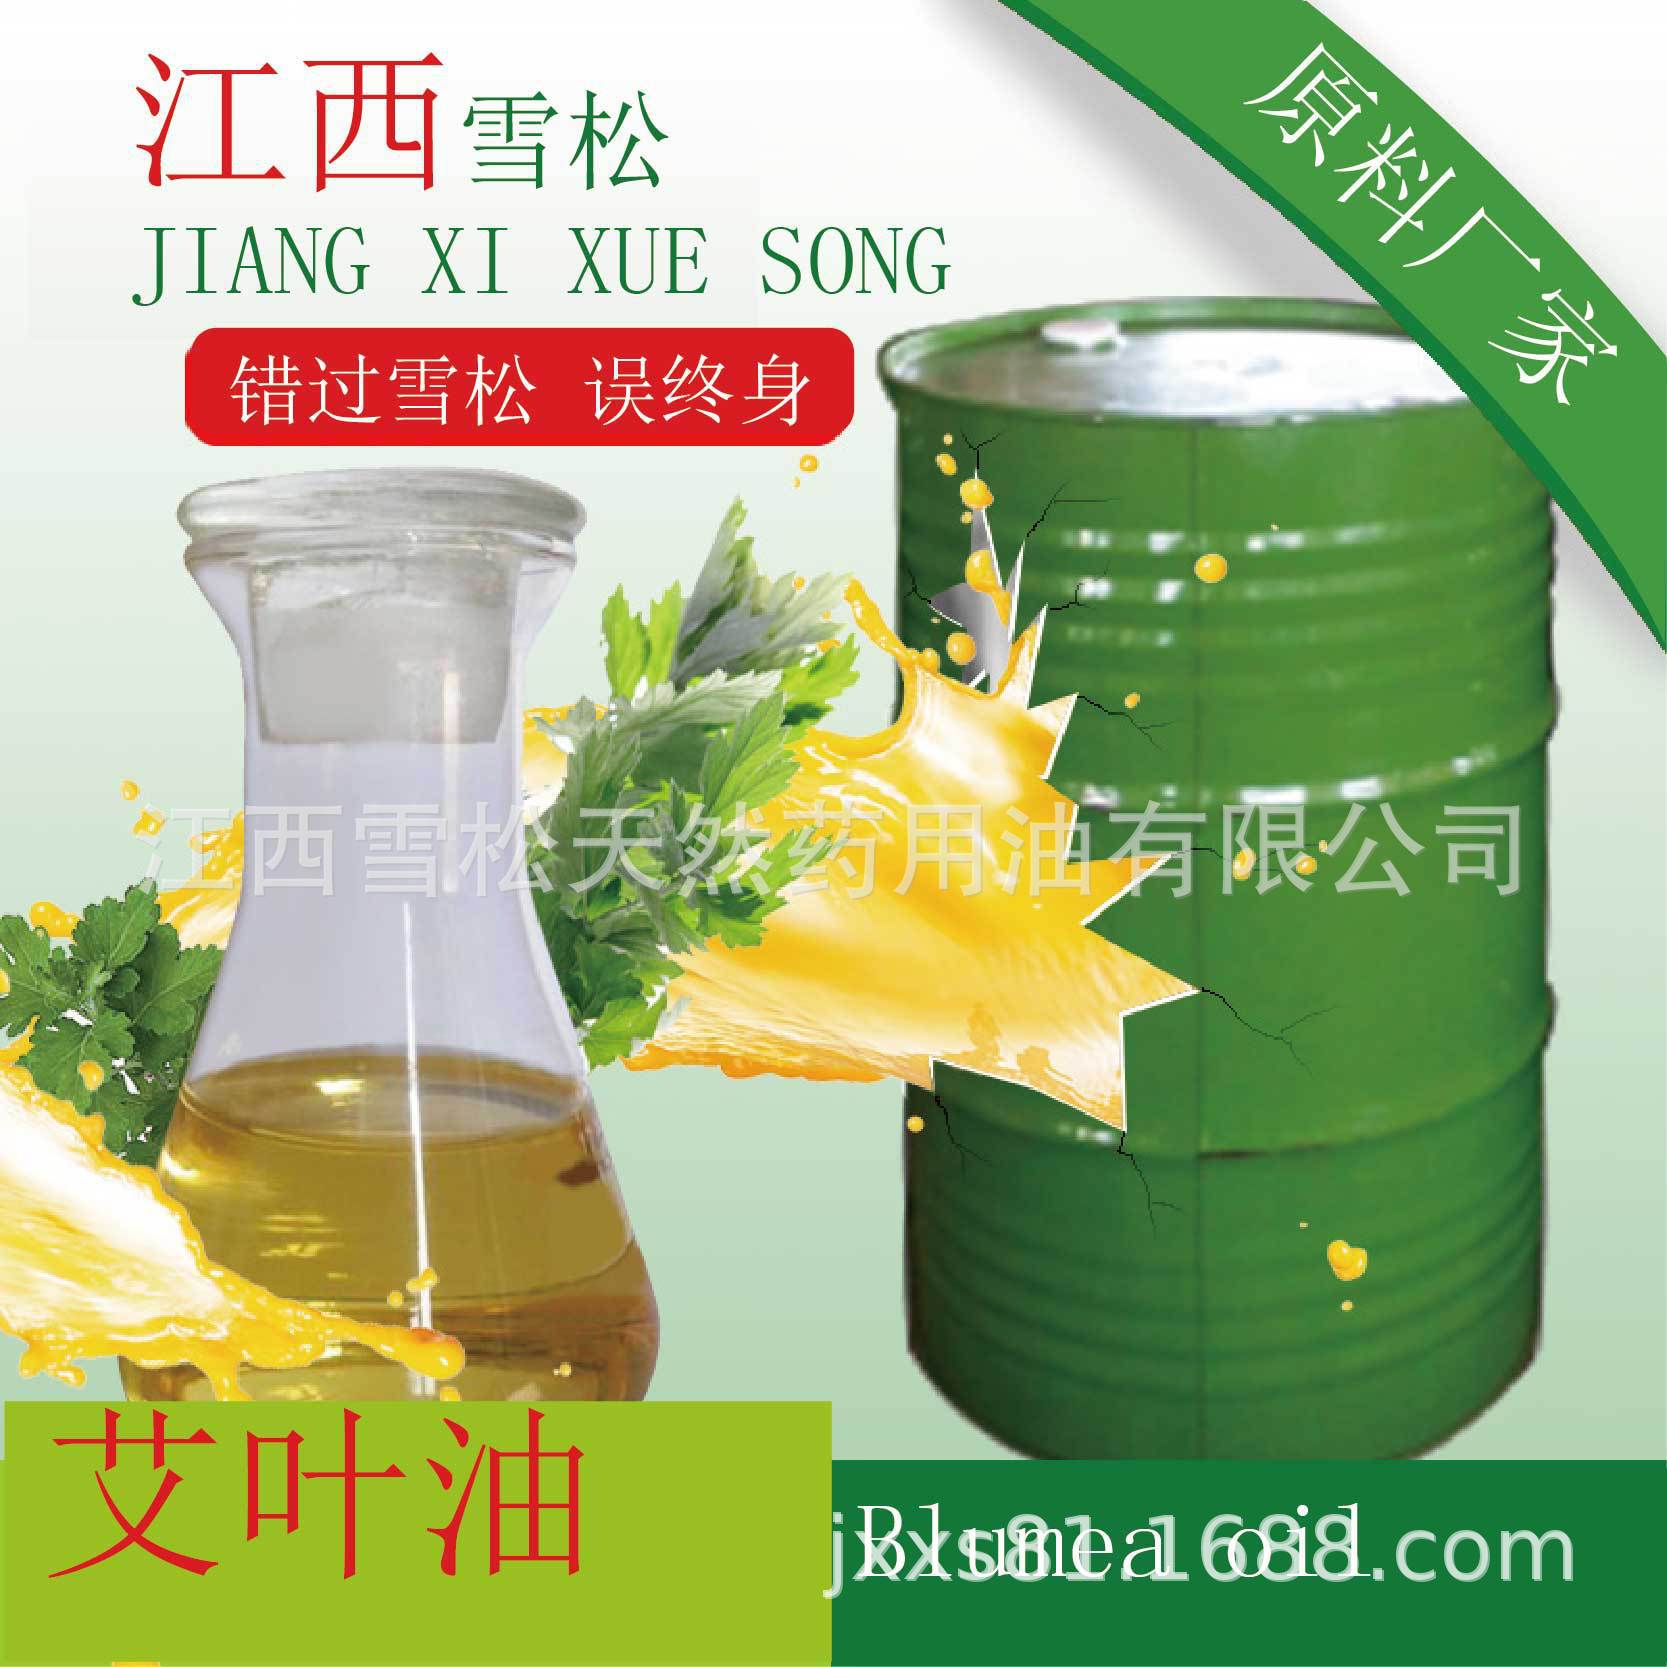 厂家直销 艾叶油 艾炙原料 艾蒿精油  日化原料示例图2